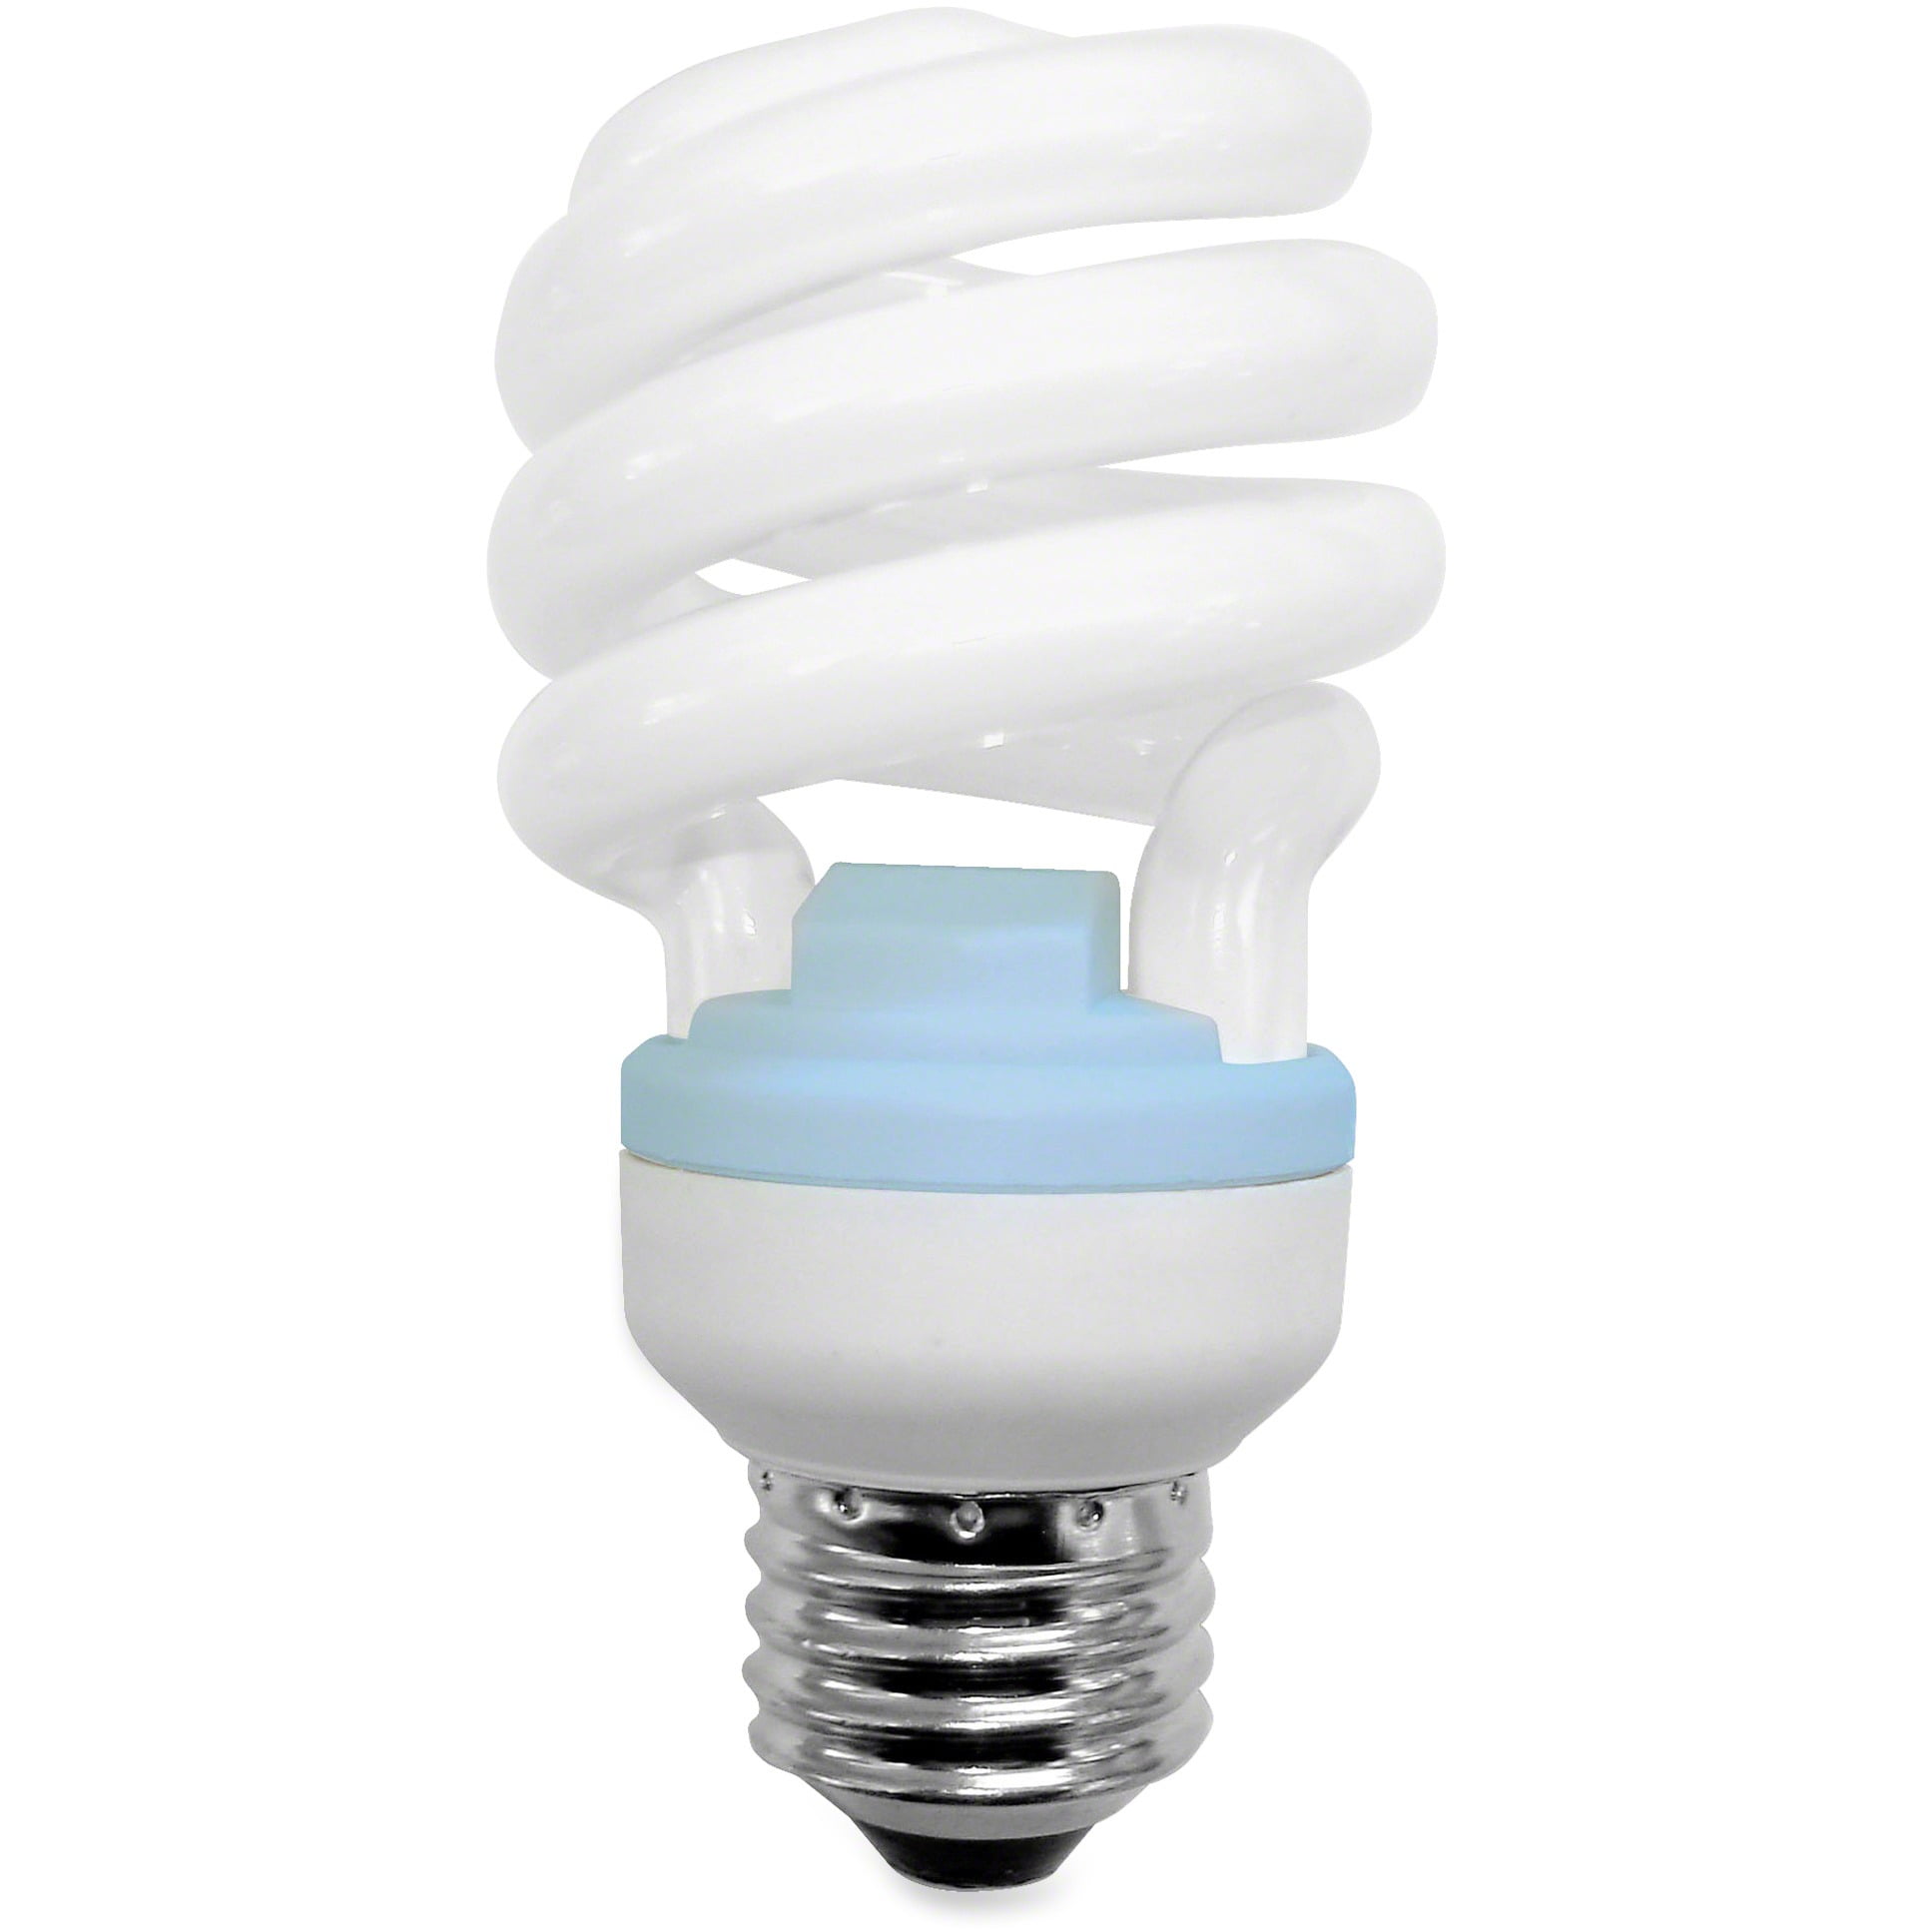 12 GE Reveal CFL 10 Watt Spiral Light Bulb with Medium Base 40 Watt Replacement 